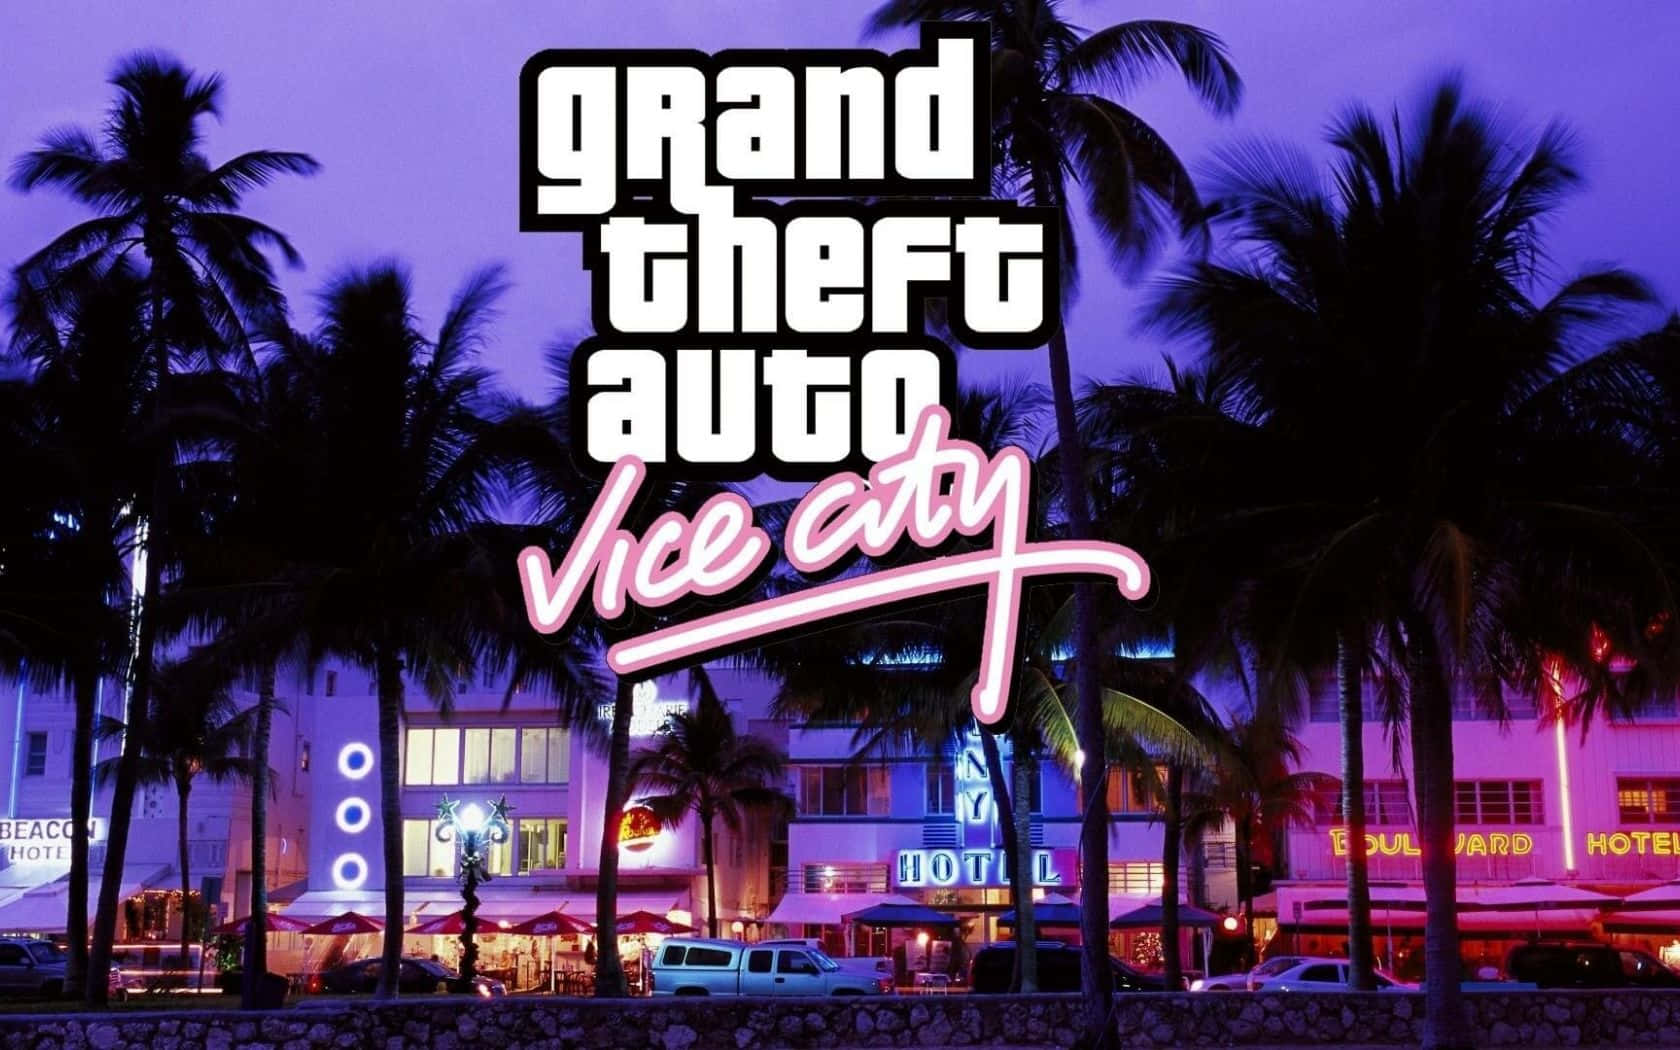 Oplev den ekshilaration af kriminalitet i Grand Theft Auto Vice City. Wallpaper